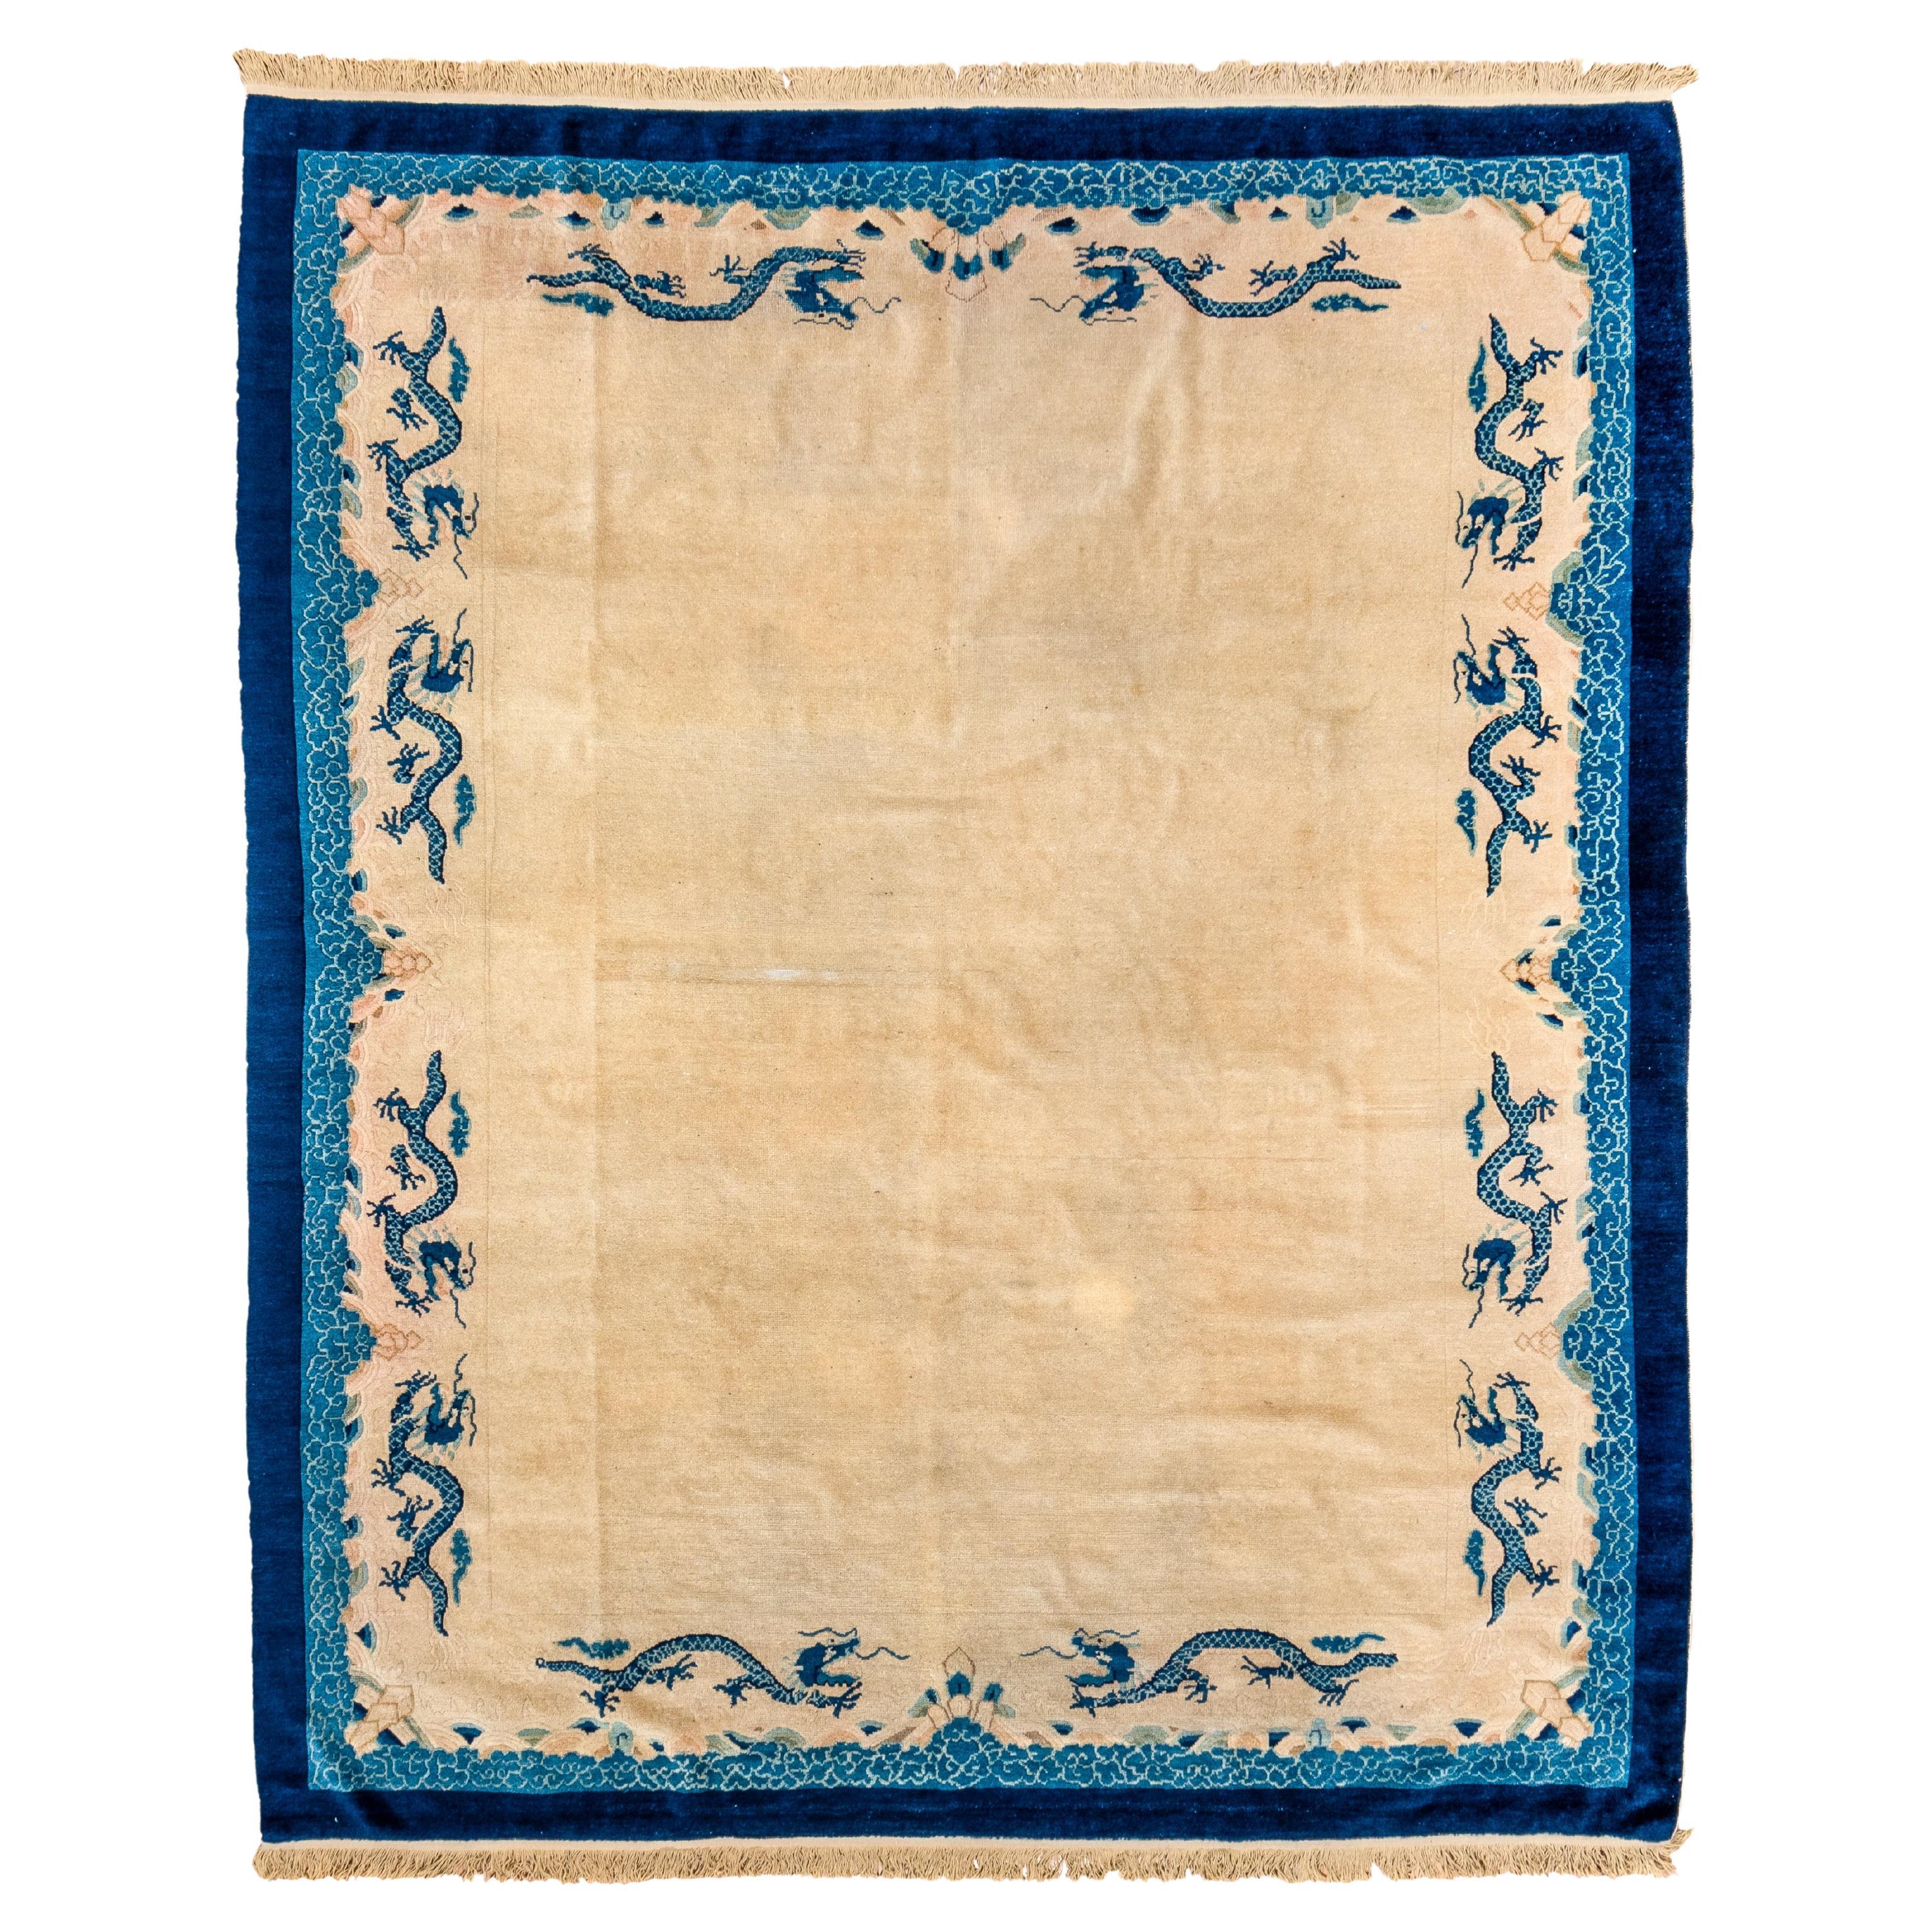 Antiker chinesischer Teppich mit Strohfeld, blauer Bordüre und blauen Drachen